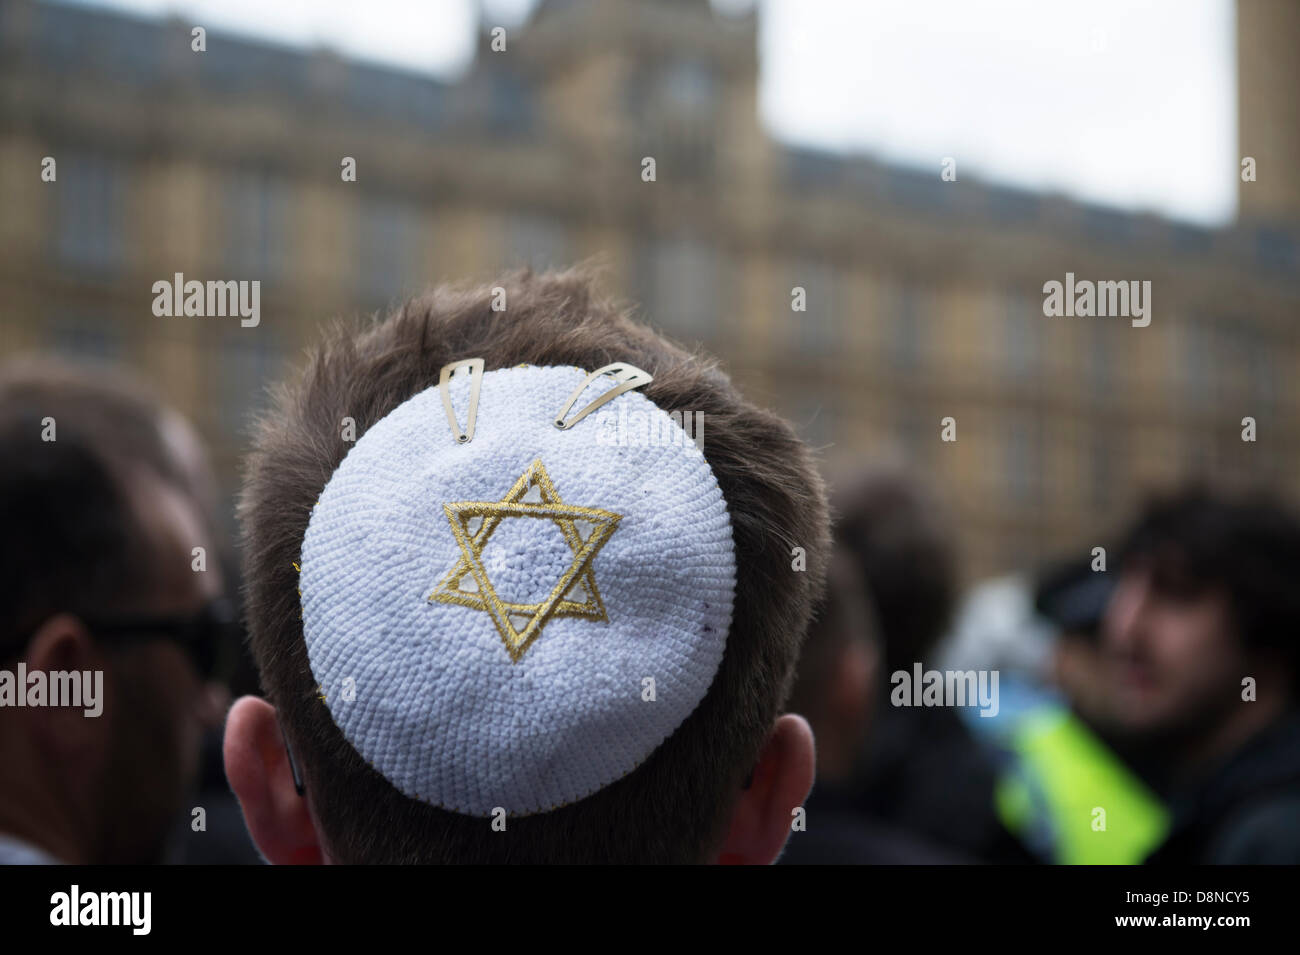 Anti-faschistische Anti-Nazi-Partei protest außerhalb des Parlaments, London. Ein jüdischer Mann trägt einen weißen Käppchen mit gold Davidstern drauf gestickt. Stockfoto